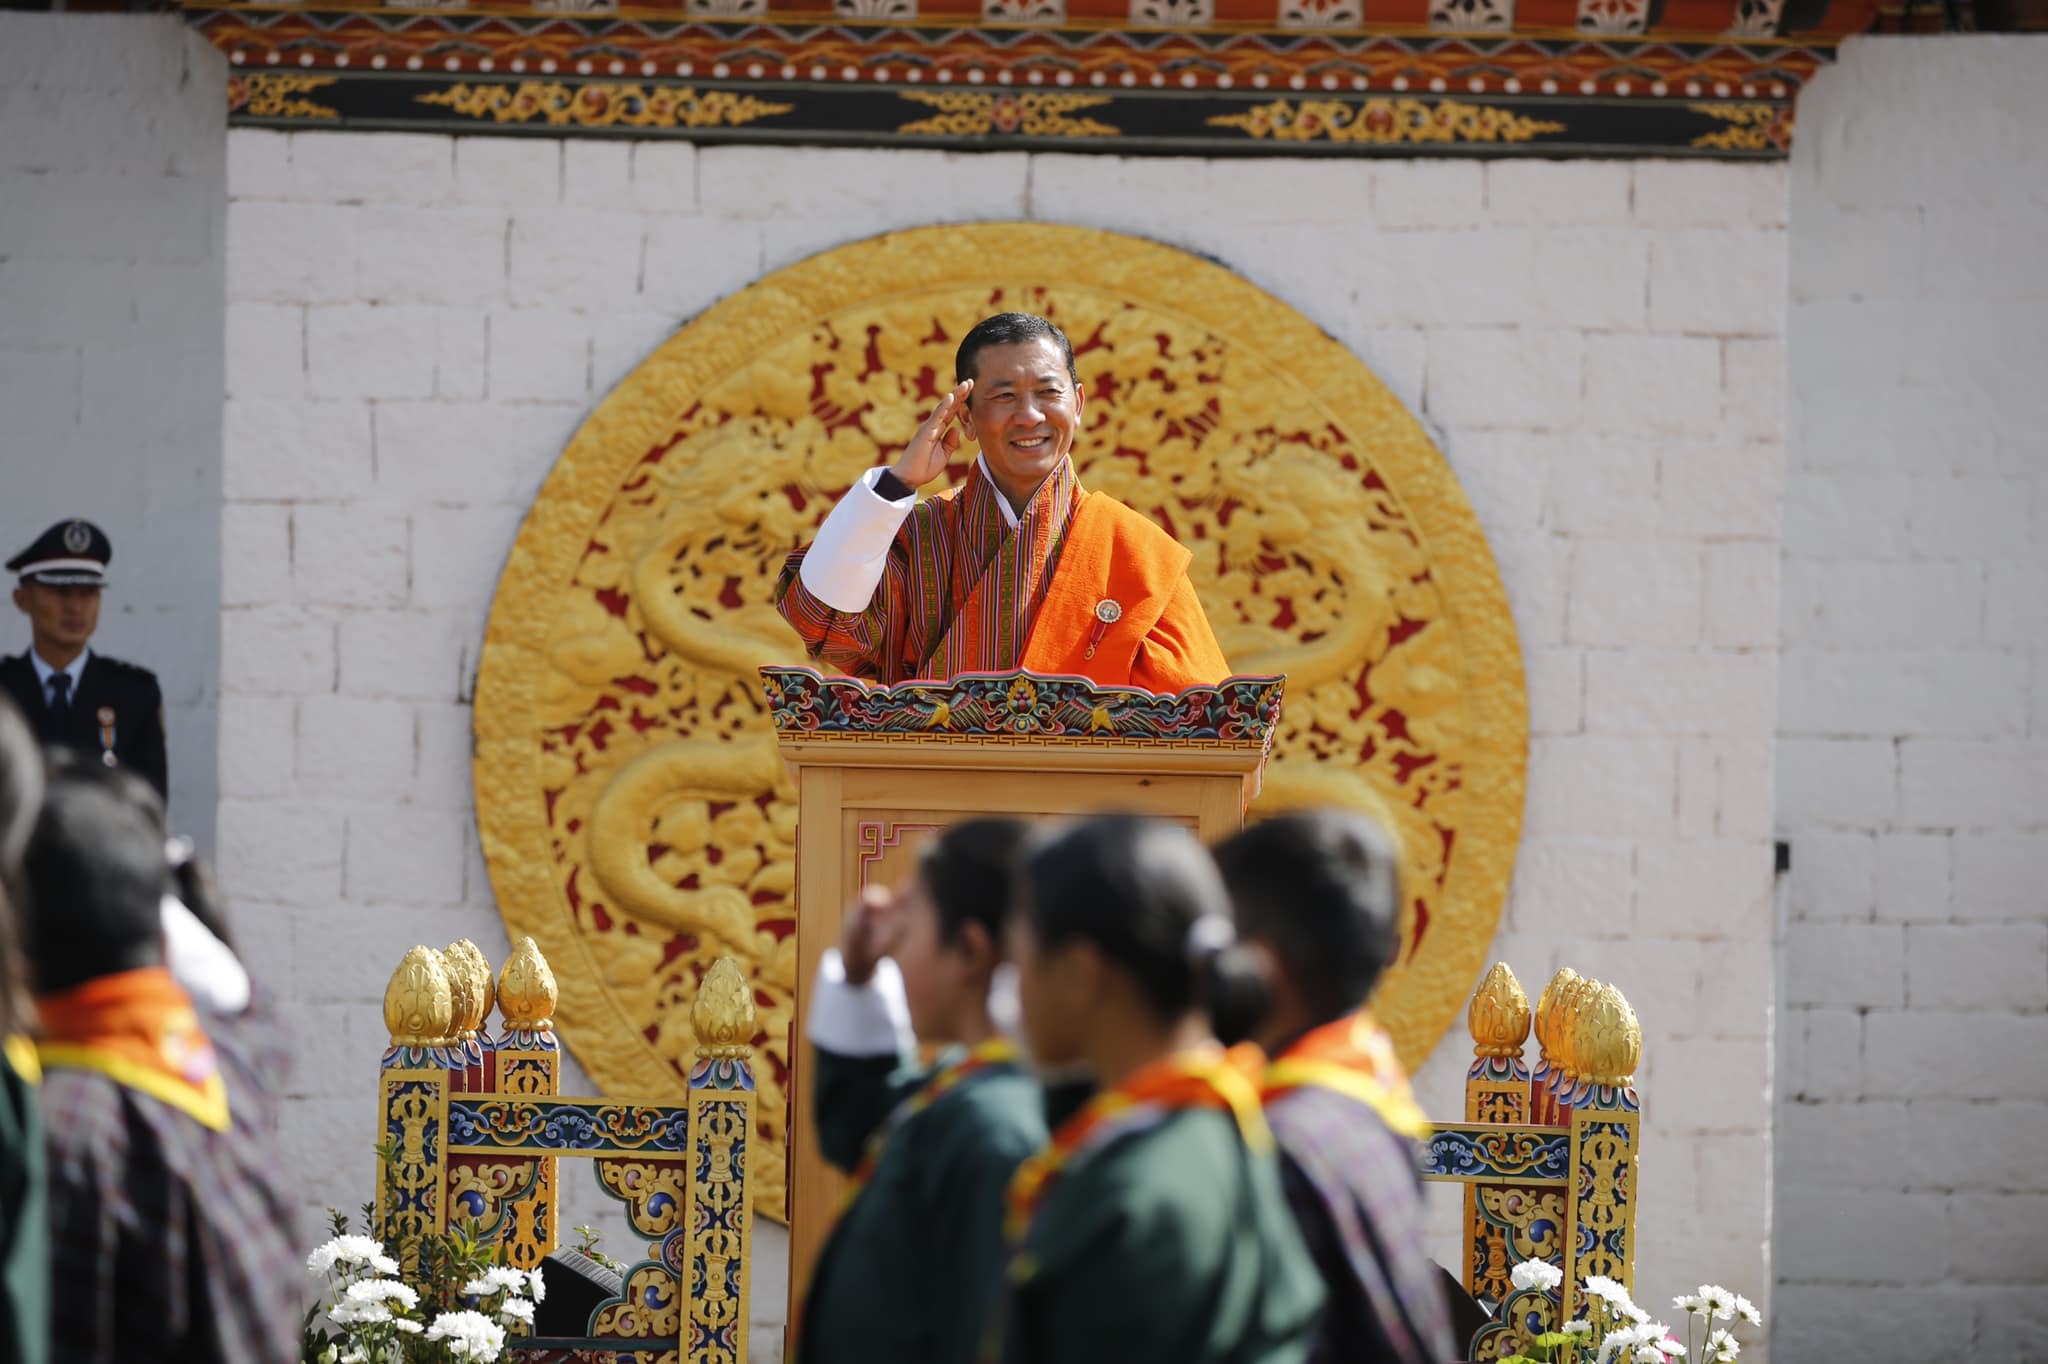 Bhután miniszterelnöke arra kérte a lakosokat, uralkodók születésnapja alkalmából fogadjanak örökbe egy kutyát, vagy ültessenek egy fát